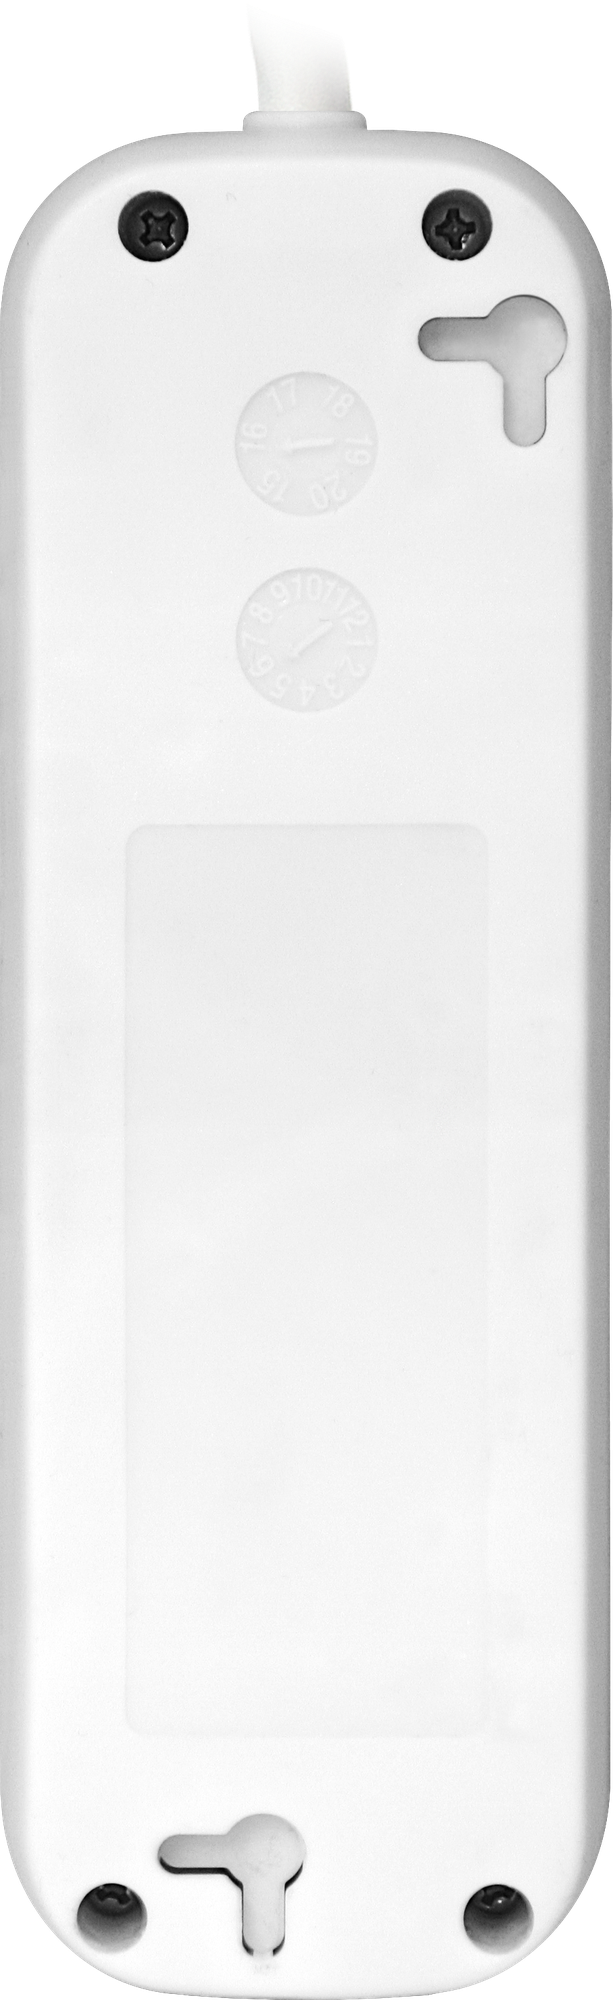 Удлинитель Defender E318, 3 розетки, с заземлением, 1,8м, белый, 262236 - фото №3